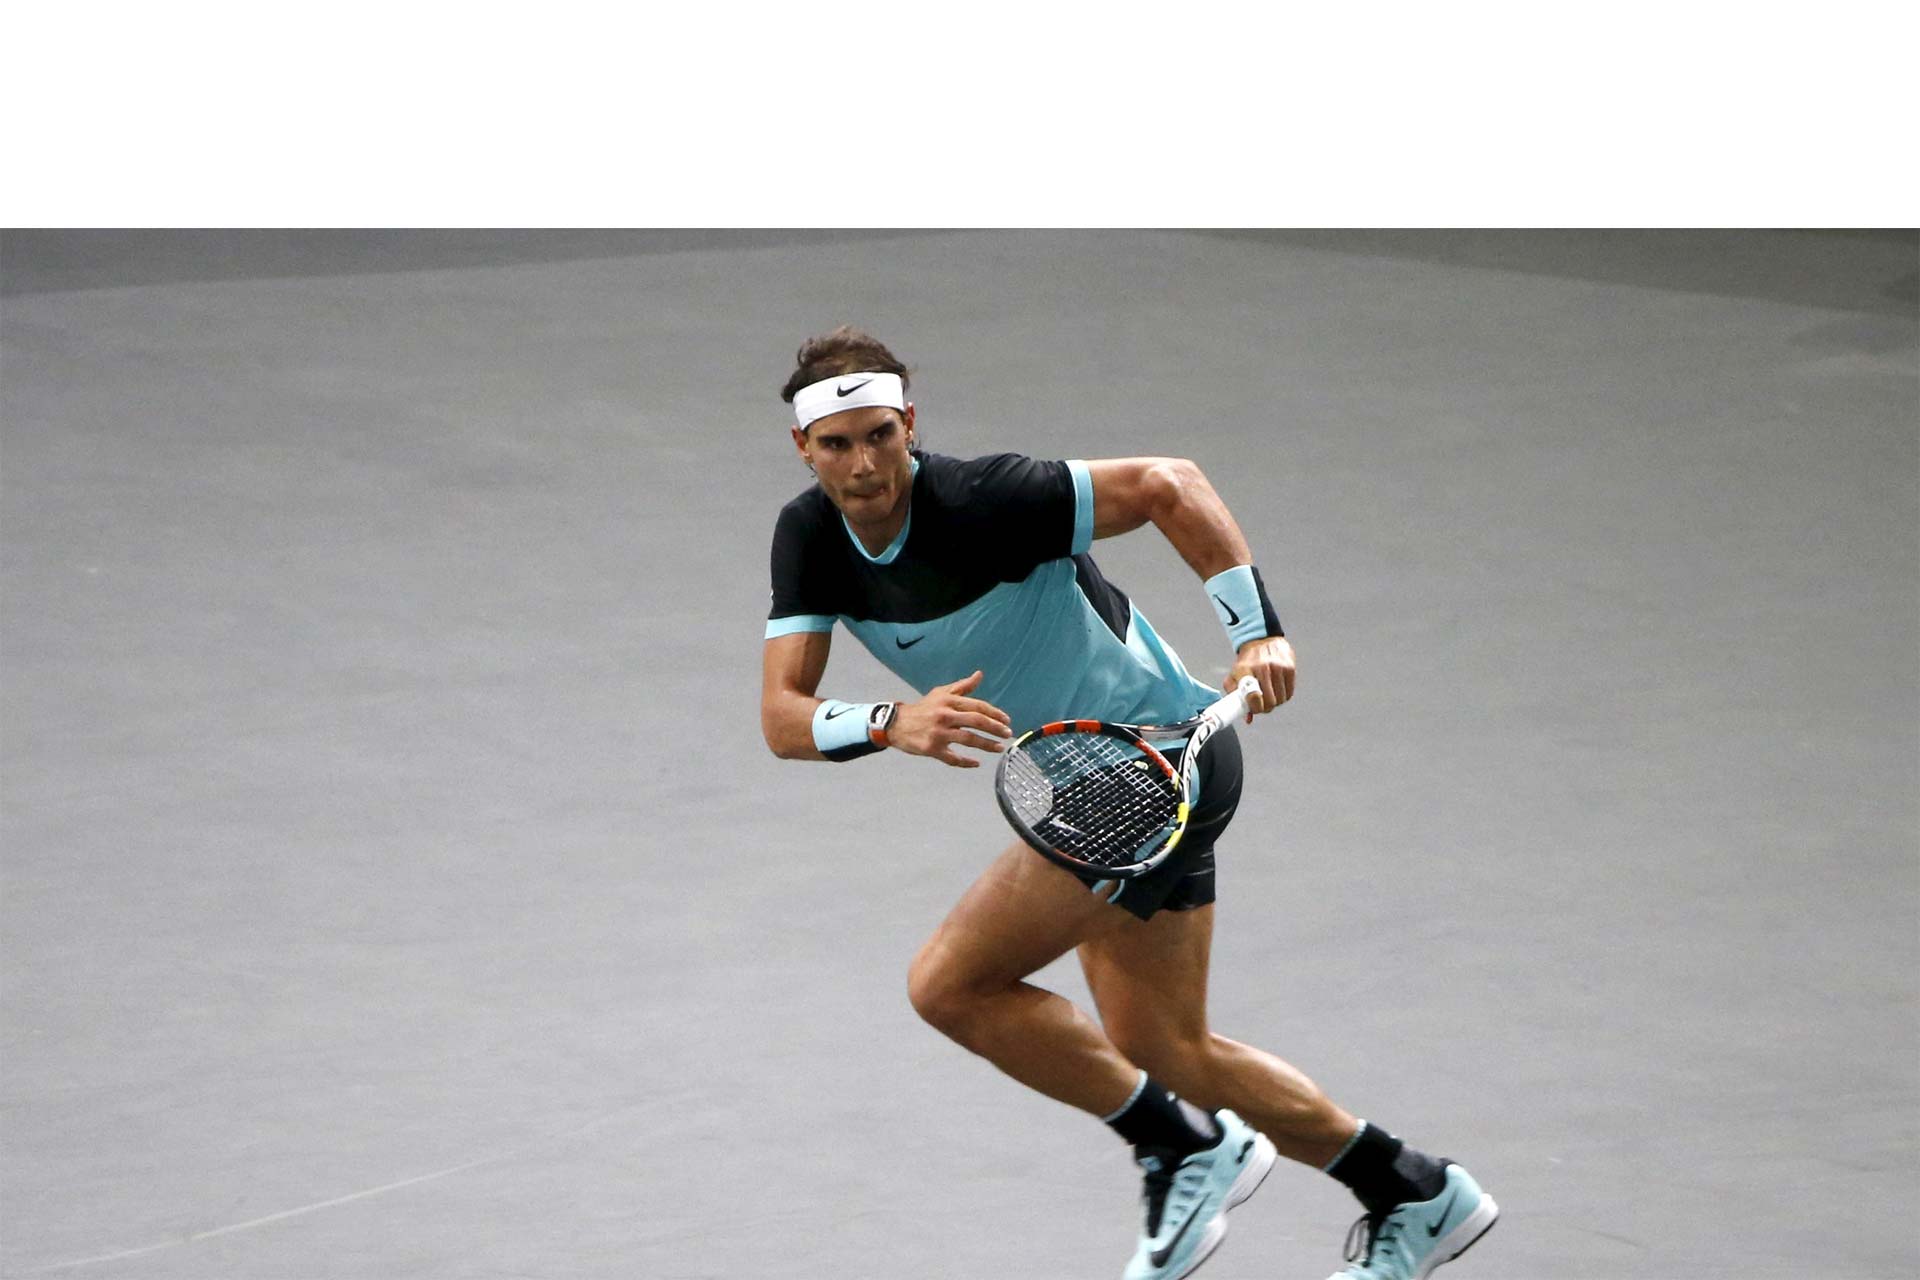 El tenista Rafael Nadal tiene muchos rituales antes y durante los partidos. El más famoso es acomodarse la ropa interior